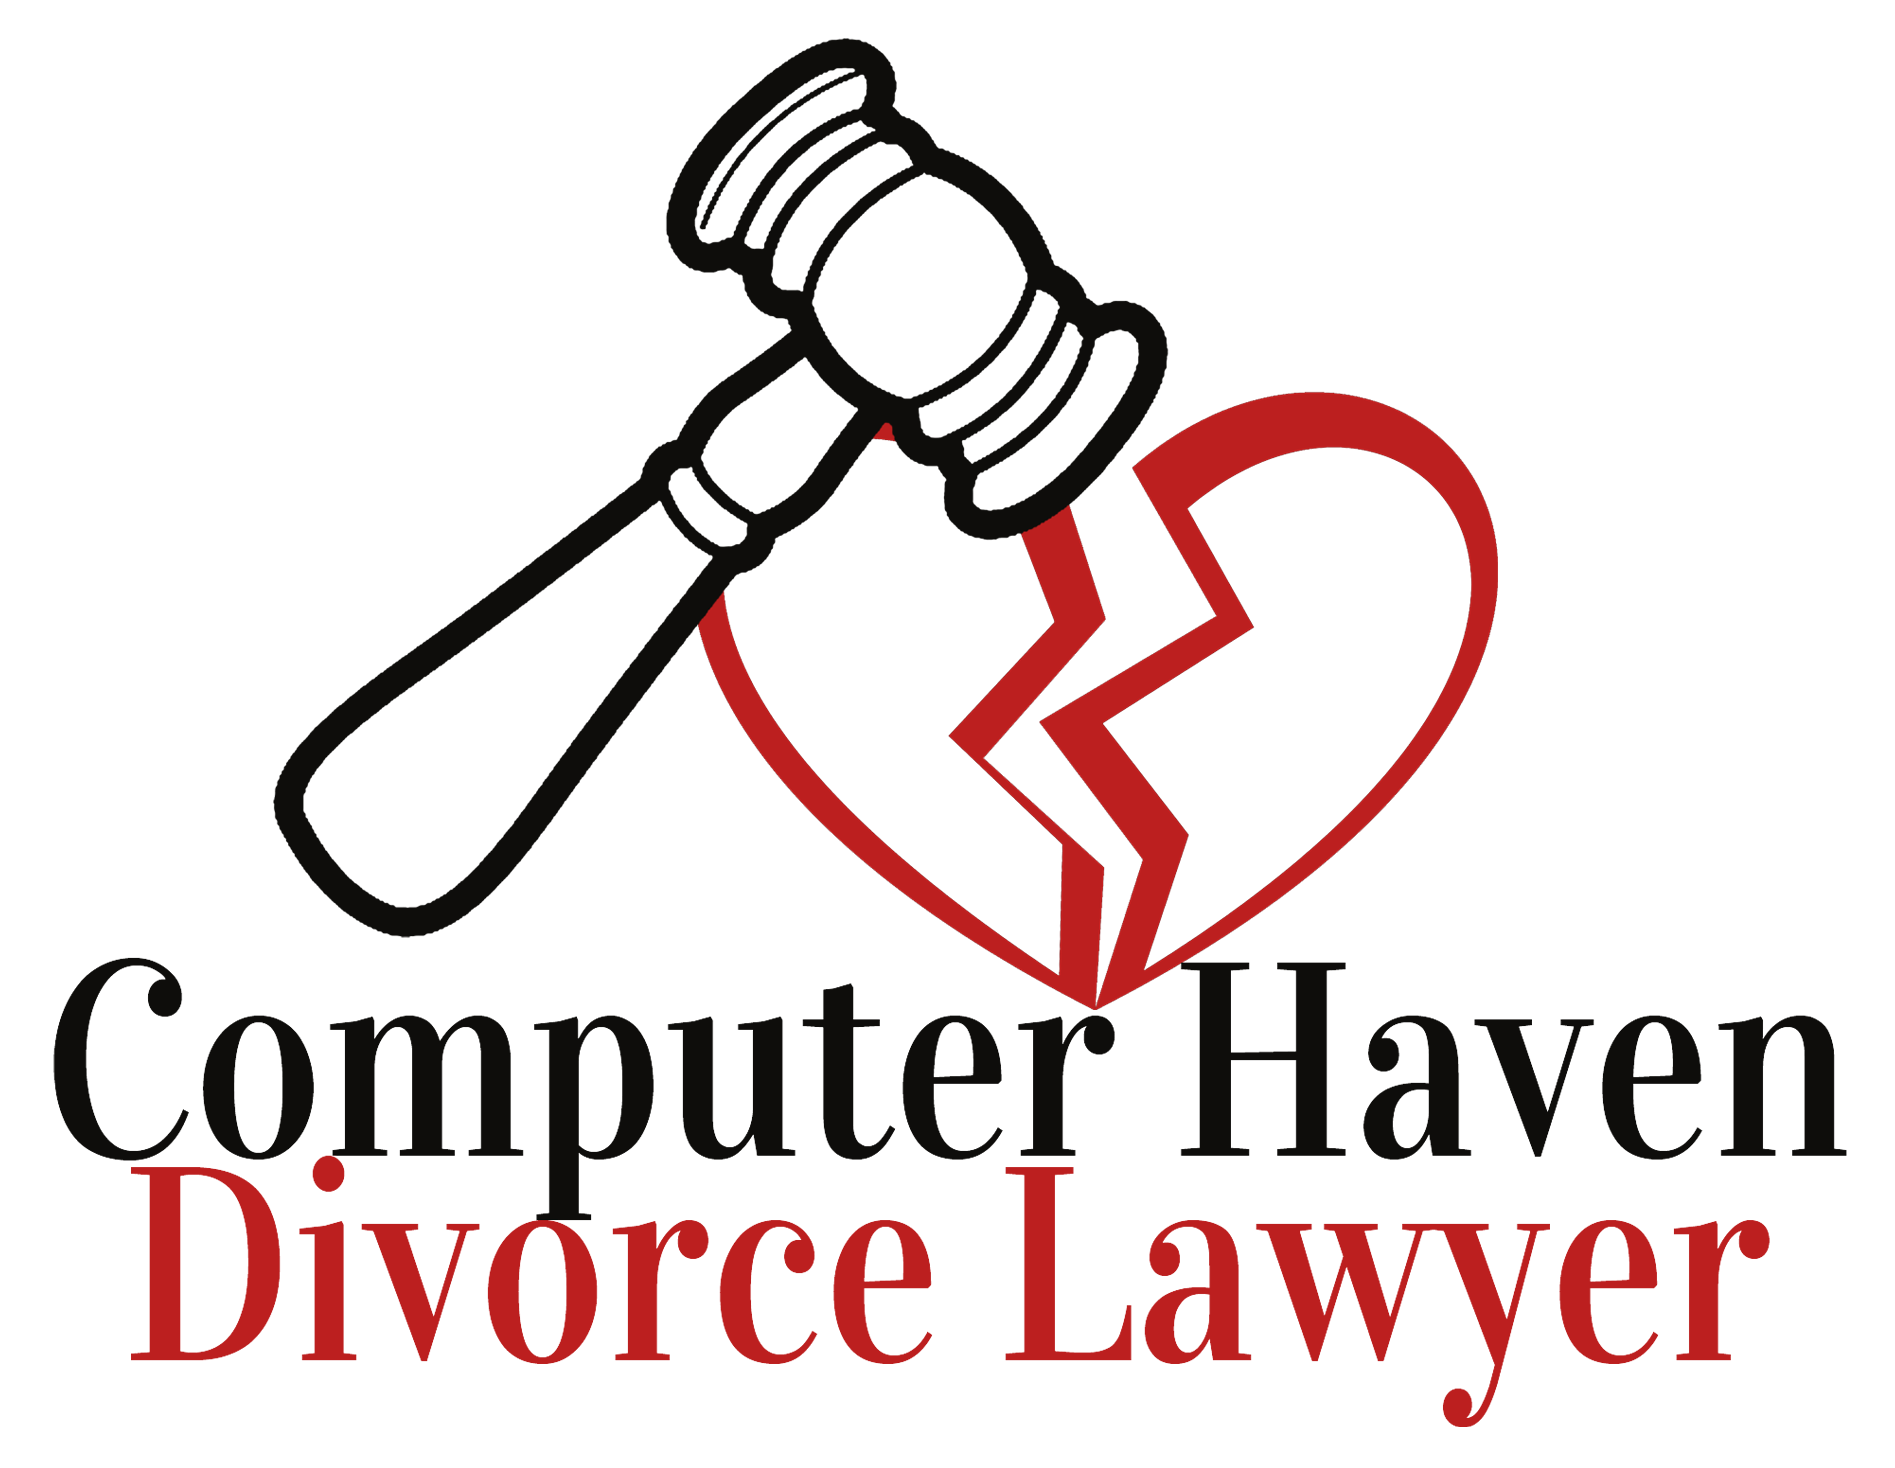 Computer Haven Divorce Lawyer